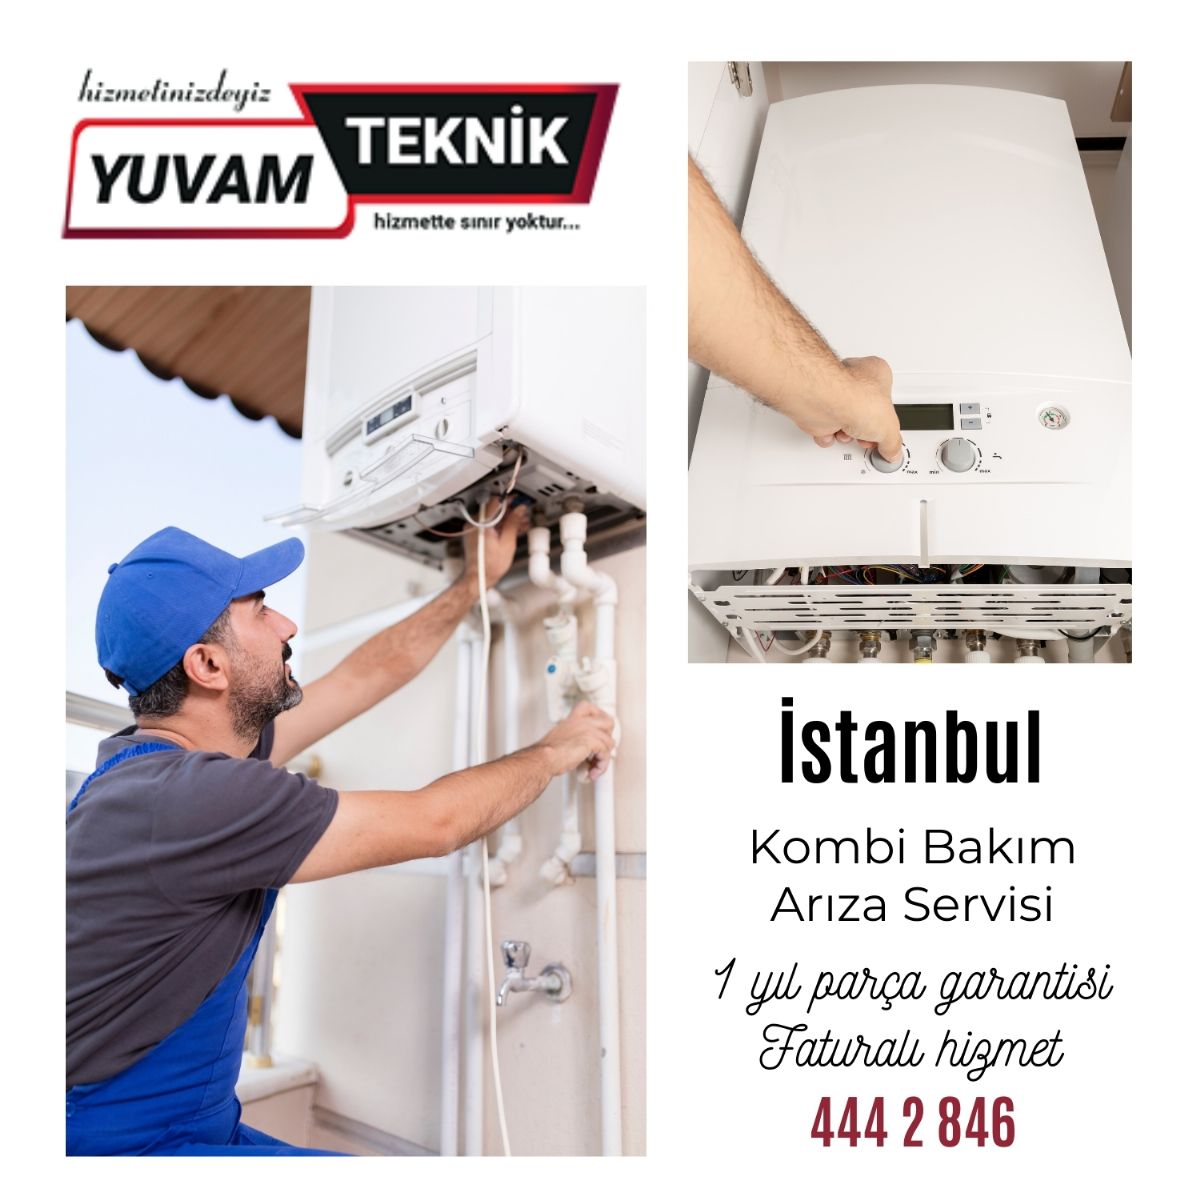 İstanbul kombi bakım ve arıza servisi 444 2 846